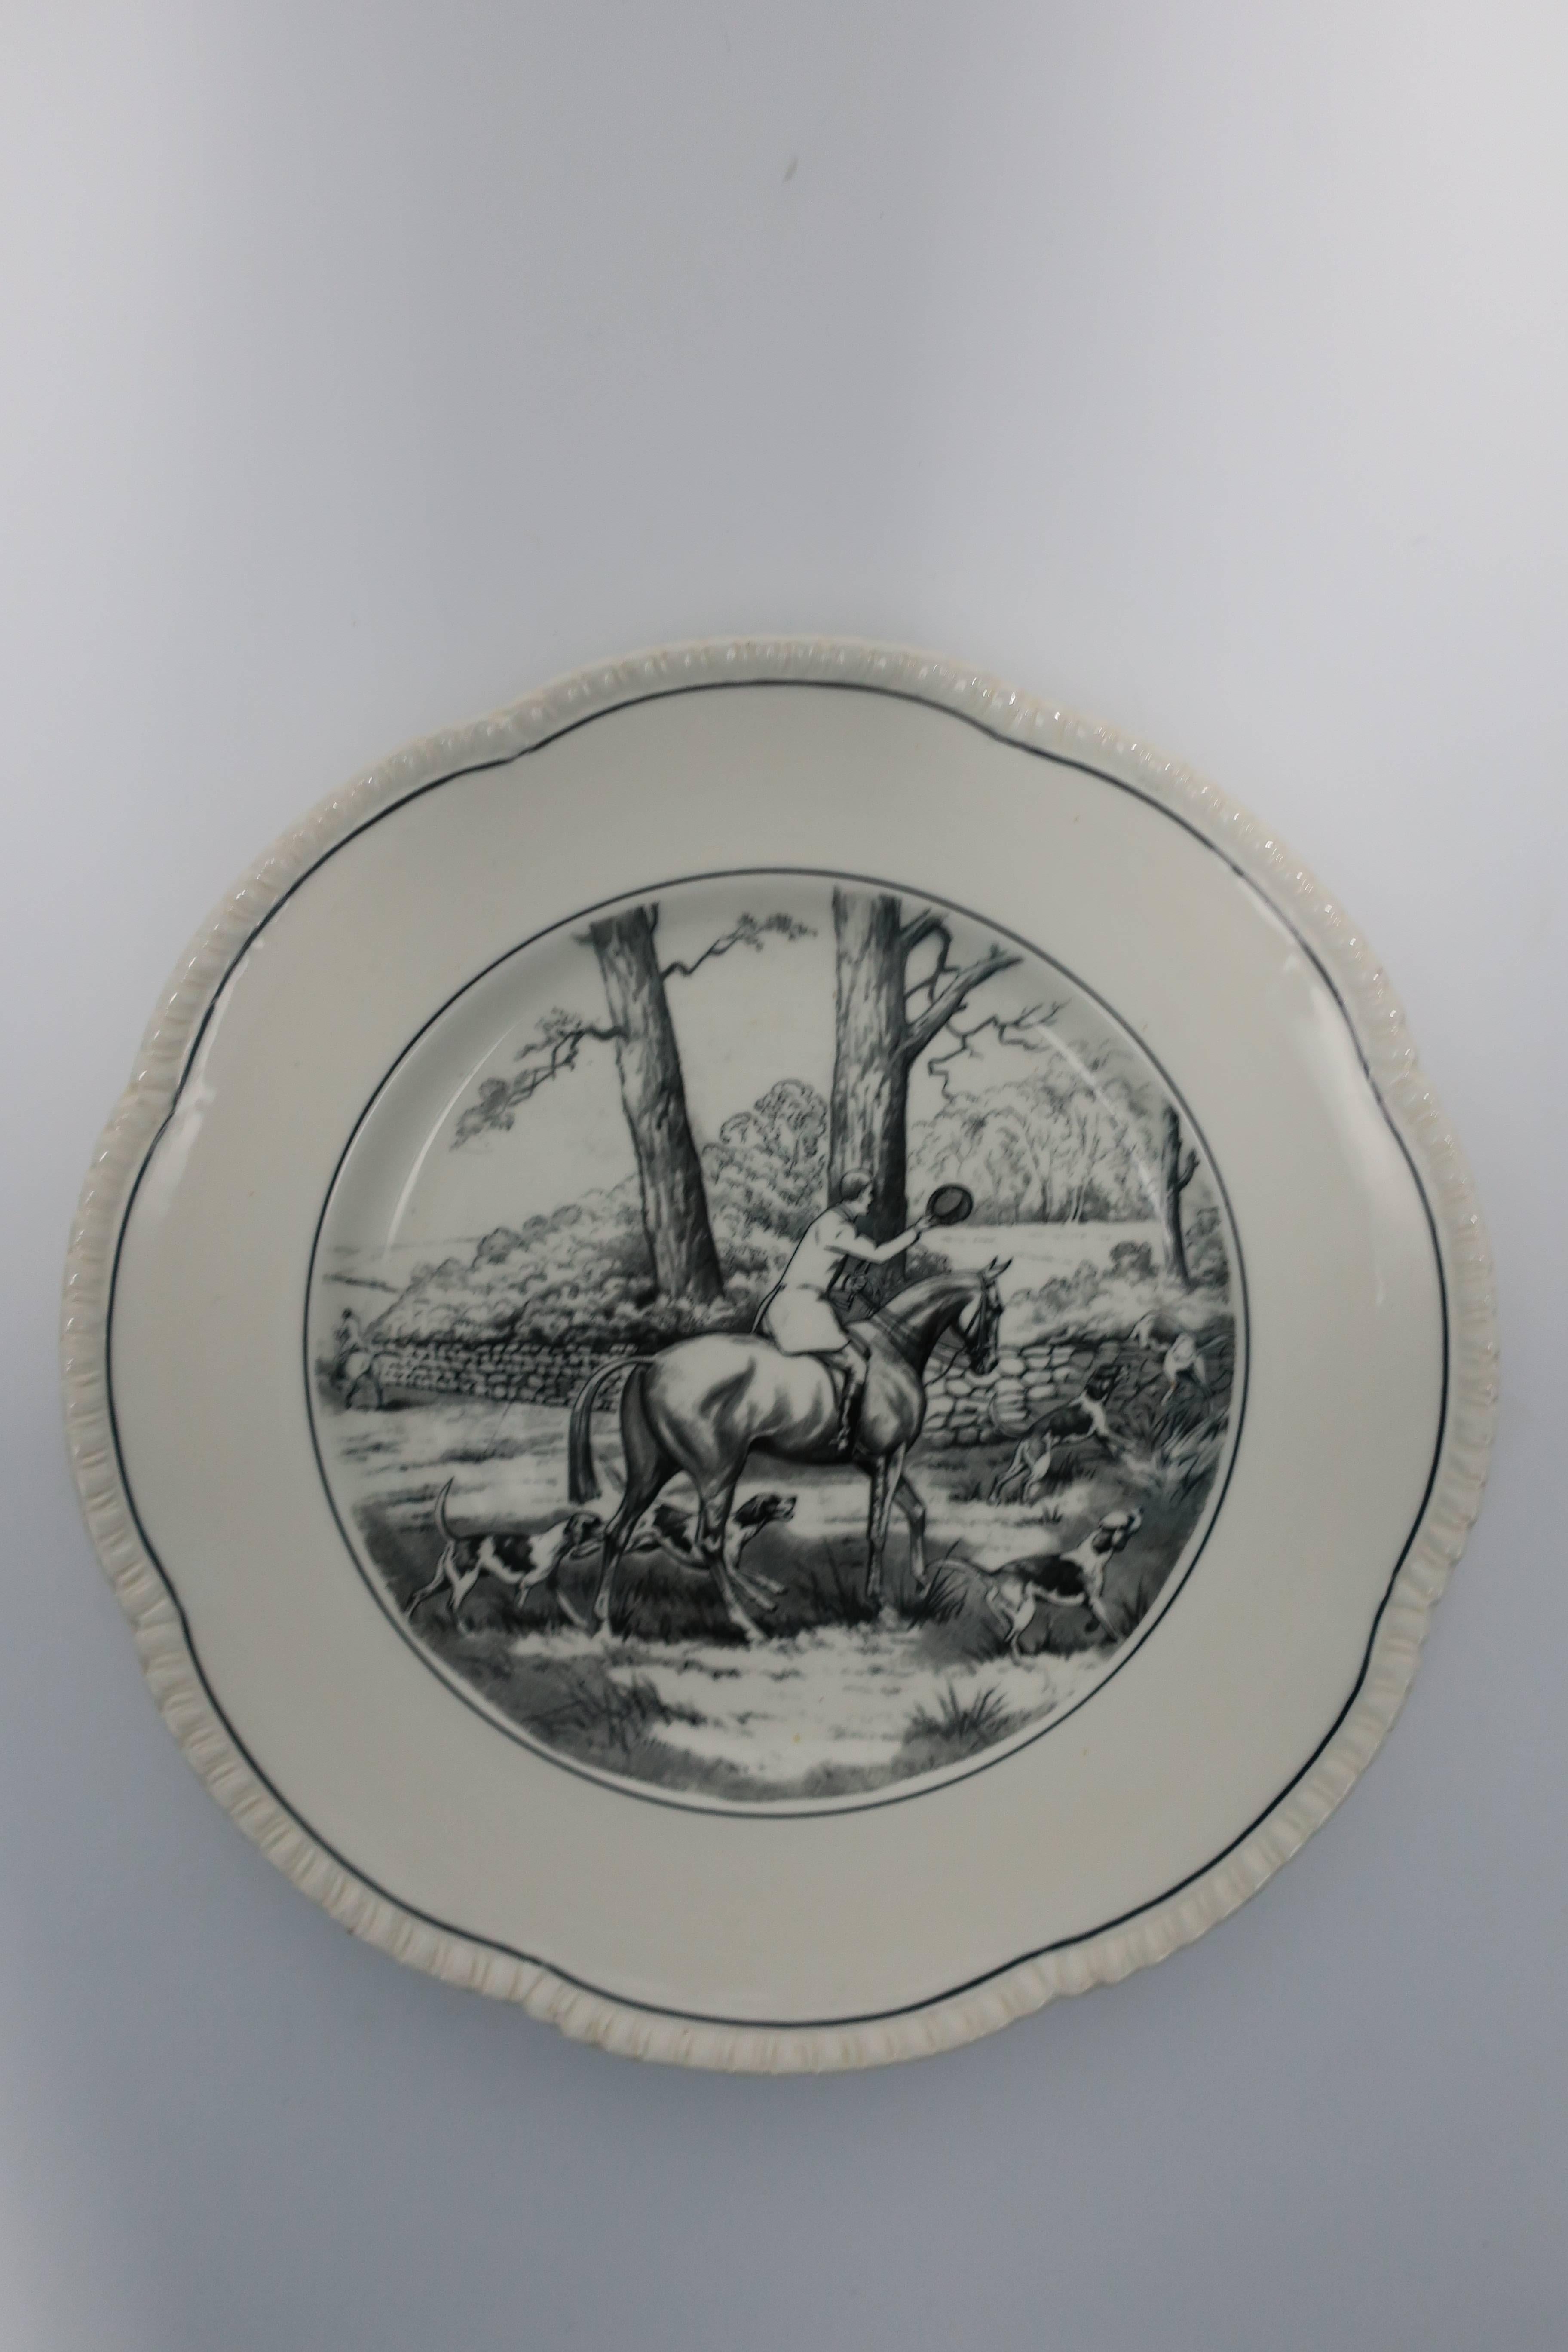 Une belle assiette en porcelaine anglaise en noir et blanc représentant une scène champêtre avec un cheval, des chiens de chasse et des oiseaux. Avec la marque du fabricant : Royal Caultron, Angleterre, est. 1774.

Les mesures comprennent : 10.5